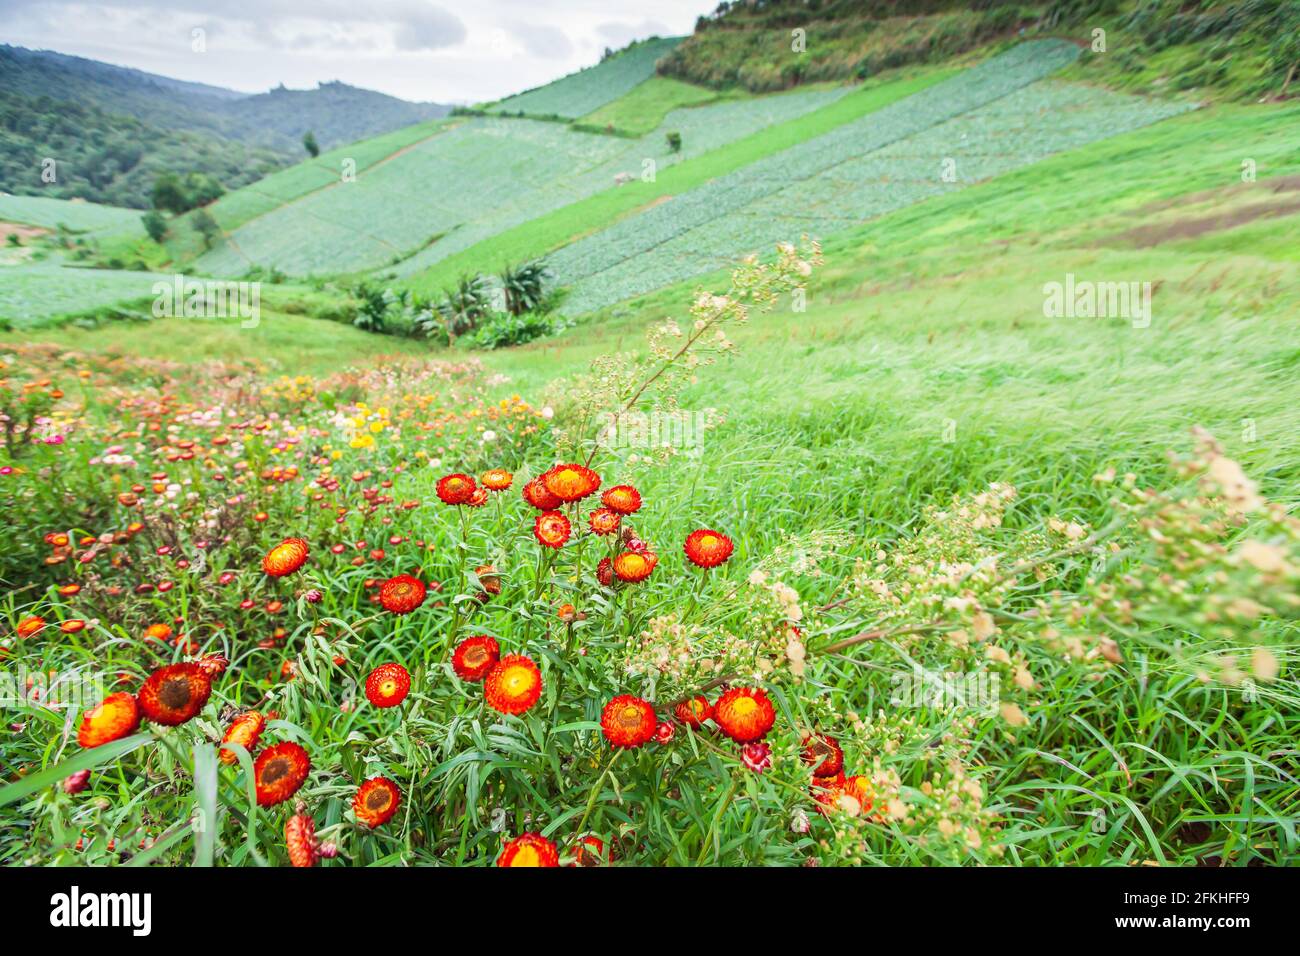 Blühende Gänseblümchen in einem Tal, verschiedene Farben von Papier Gänseblümchen sind in Blüte, verschwimmen grüne Tal und Berge im Hintergrund. Frühling. Stockfoto